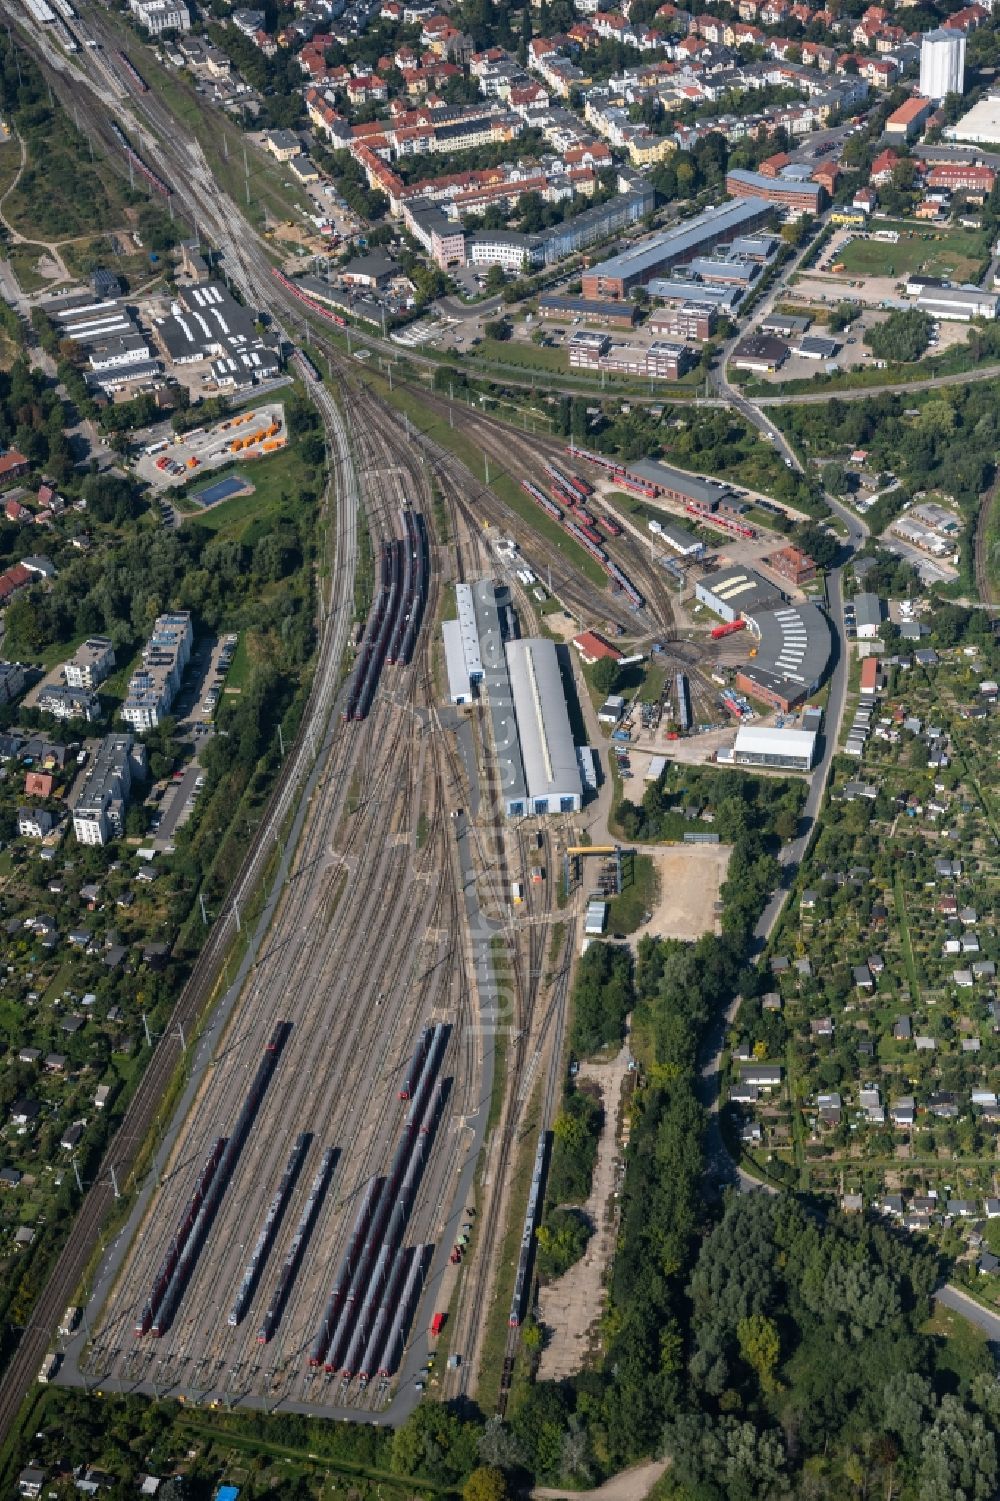 Rostock aus der Vogelperspektive: Gefüllte Abstellgleise der Deutschen Bahn in Rostock im Bundesland Mecklenburg-Vorpommern, Deutschland